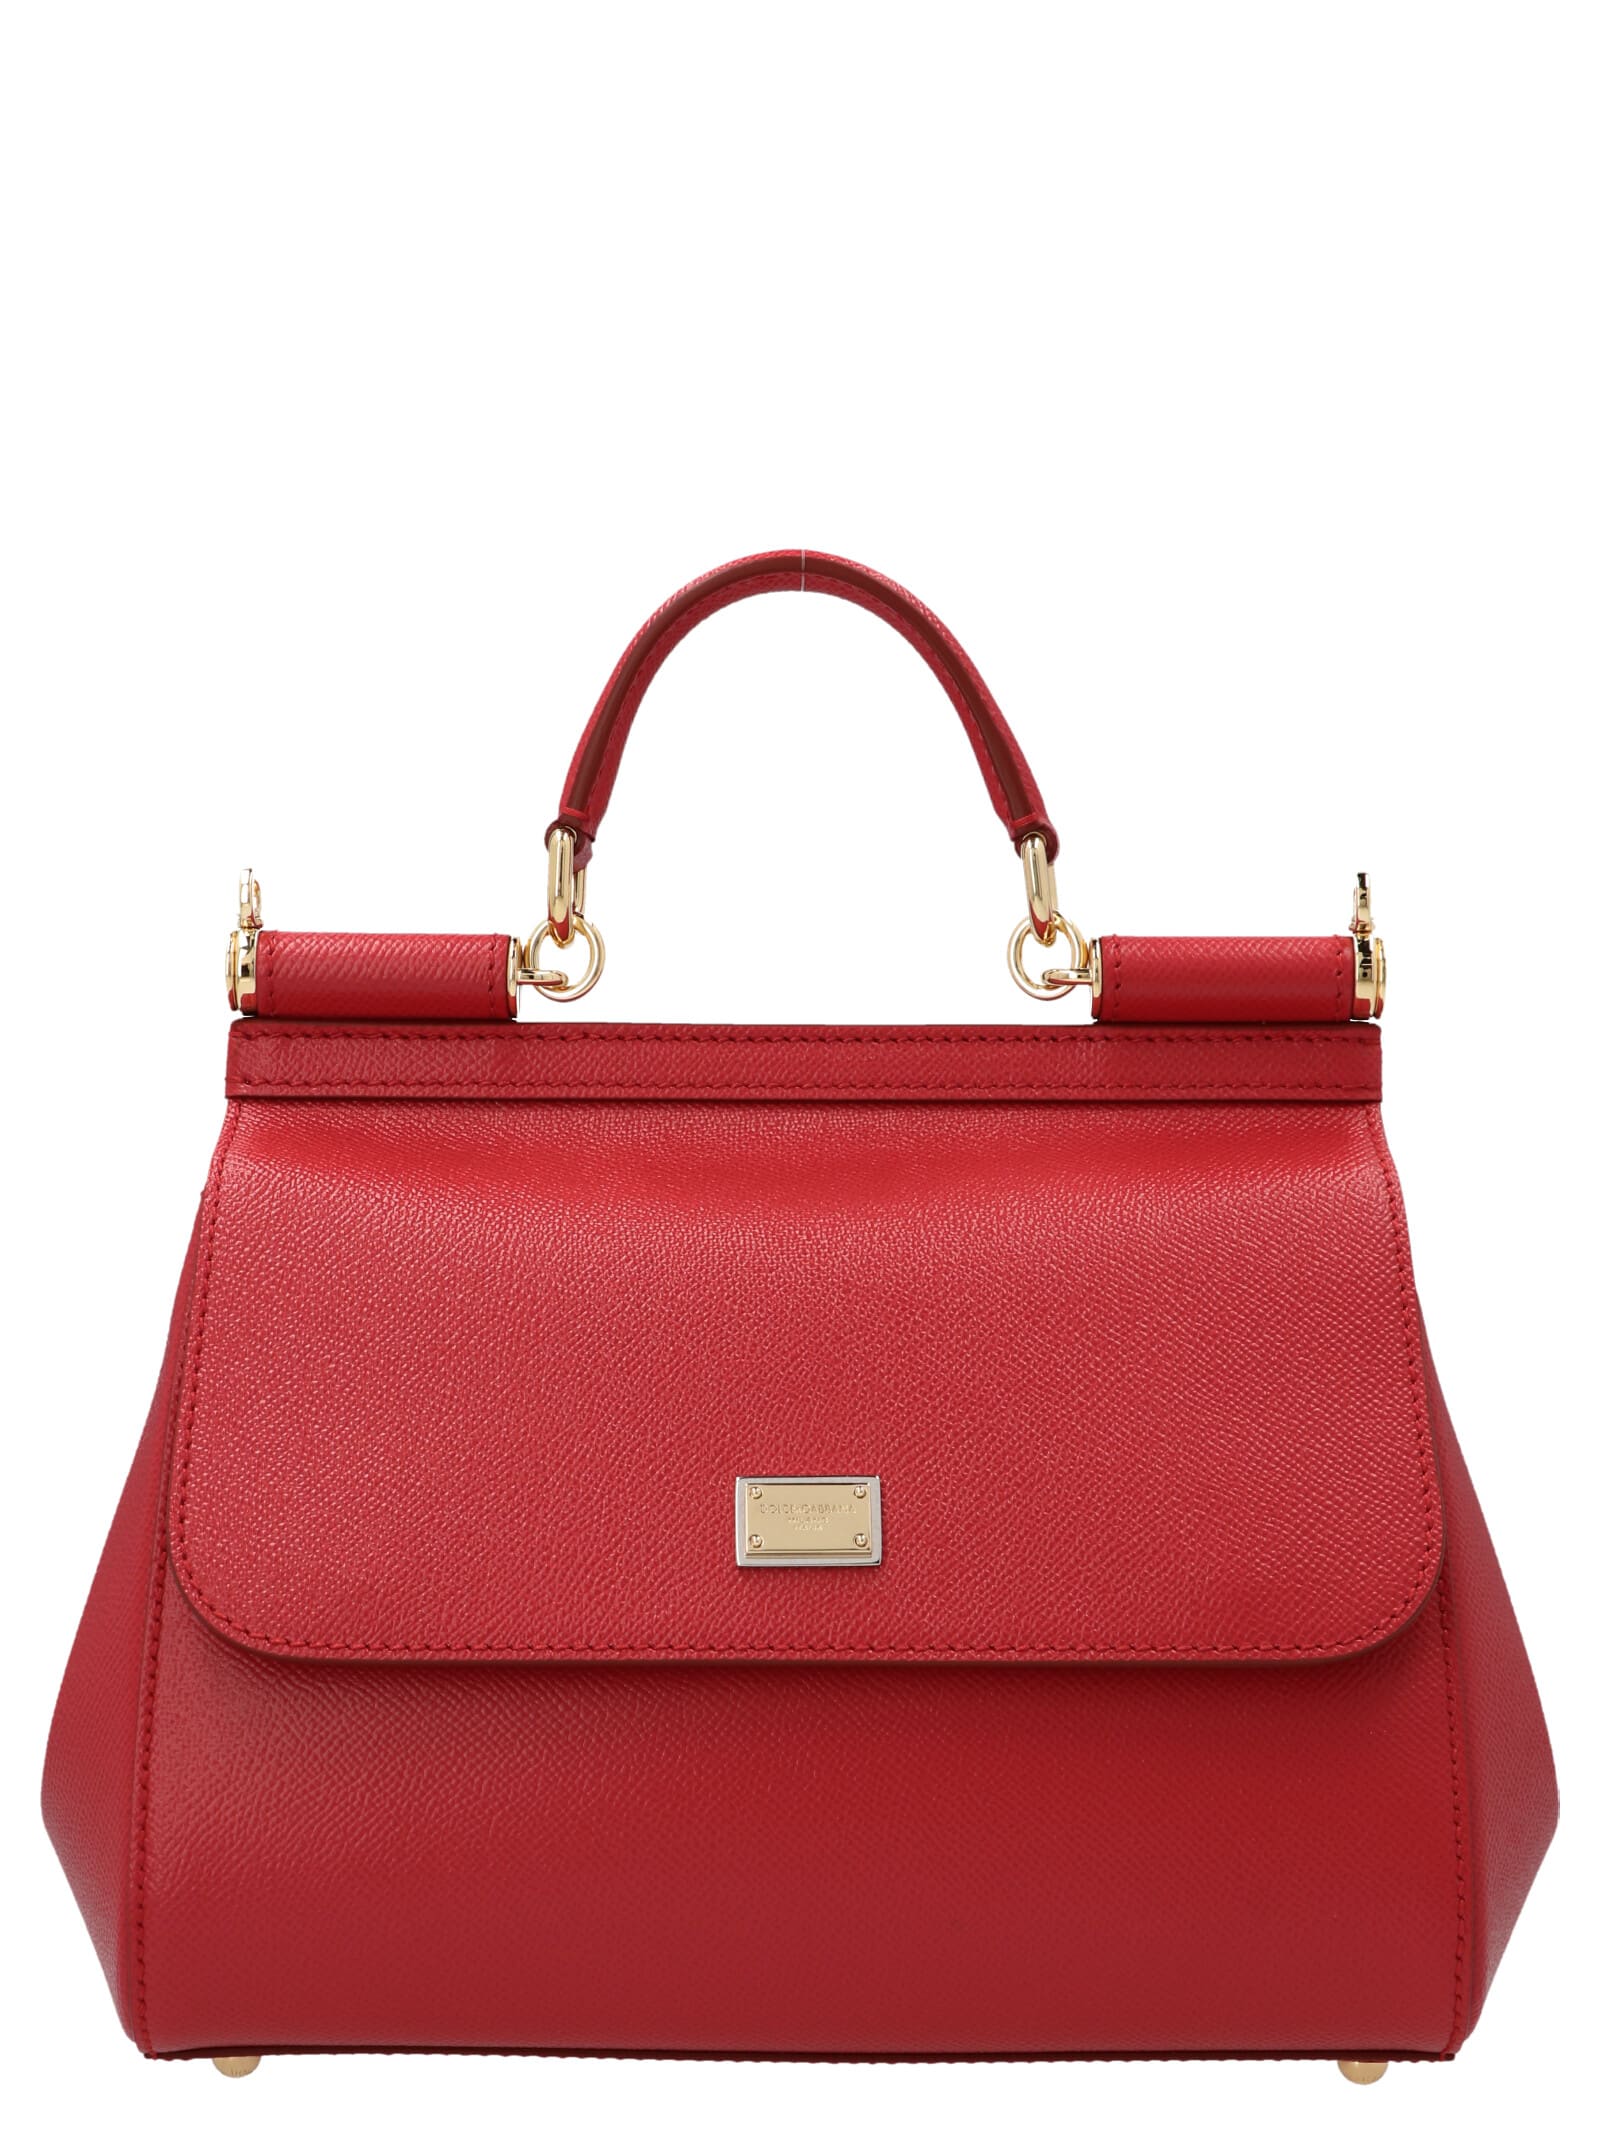 Dolce & Gabbana Sicily Medium Handbag